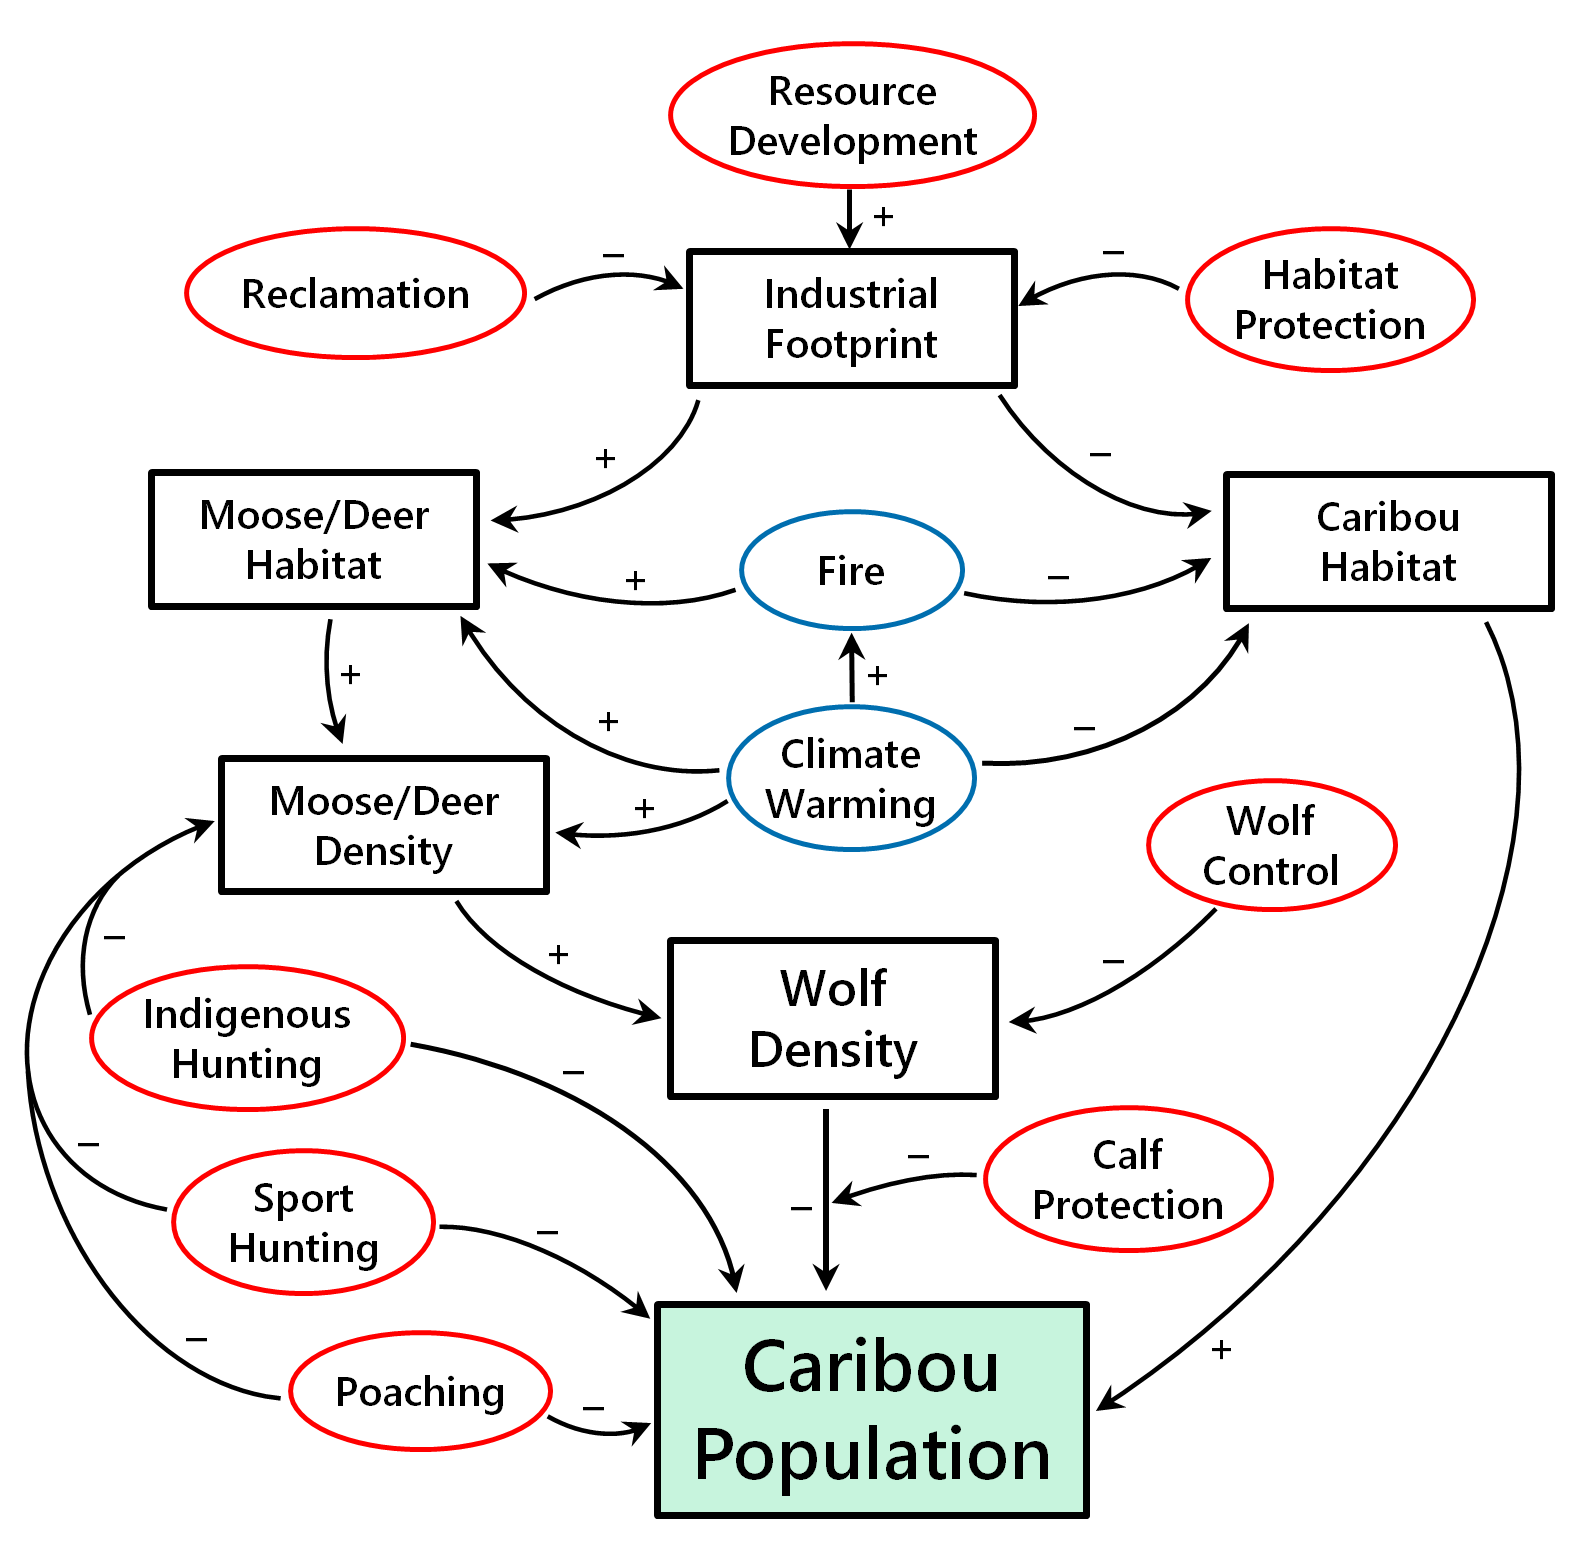 Woodland caribou population model